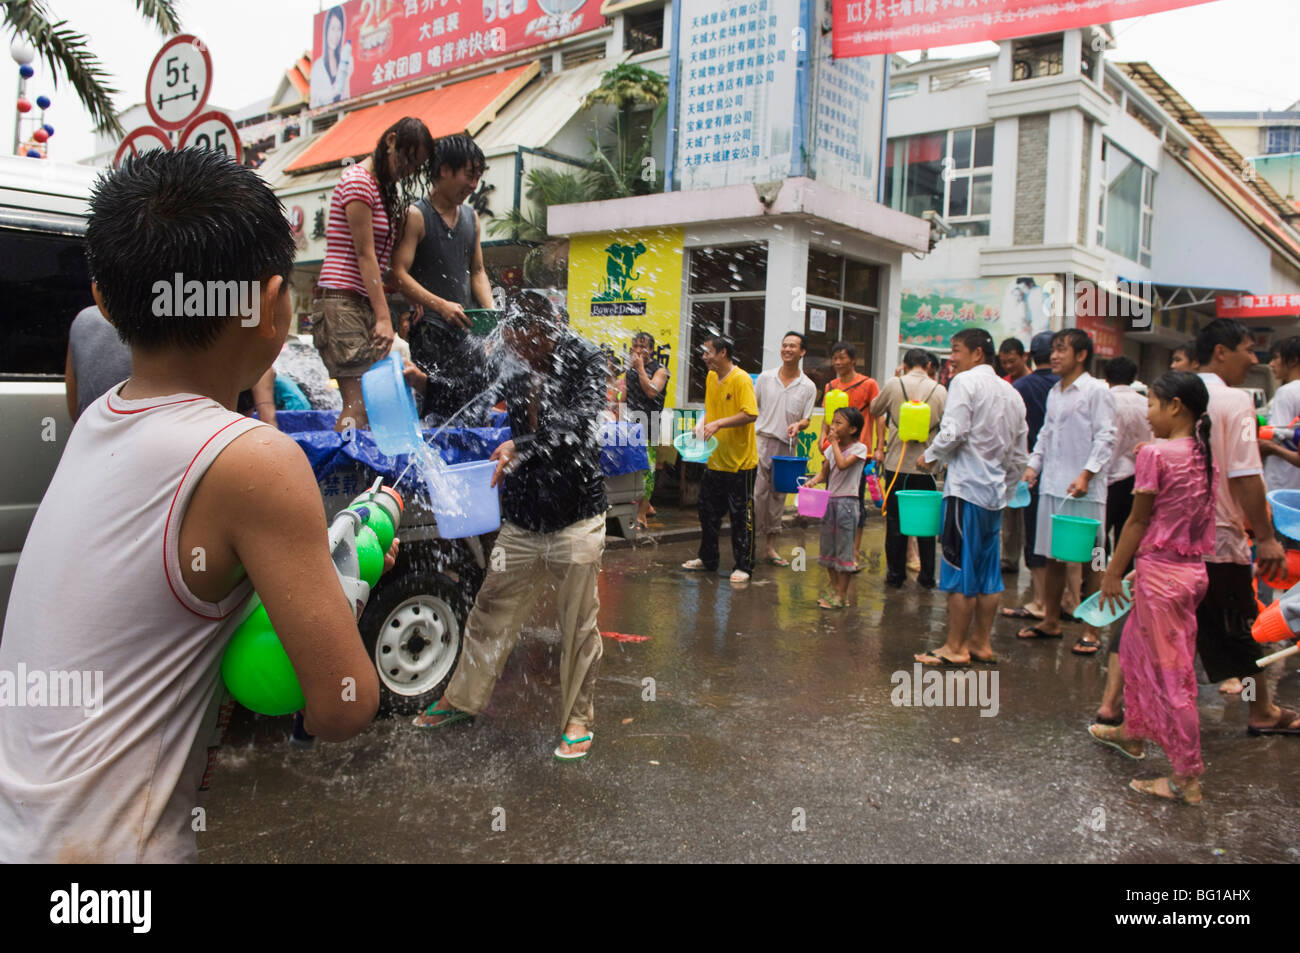 Water Splashing Festival in Jinghong town Xishuangbanna, Yunnan province, China, Asia Stock Photo